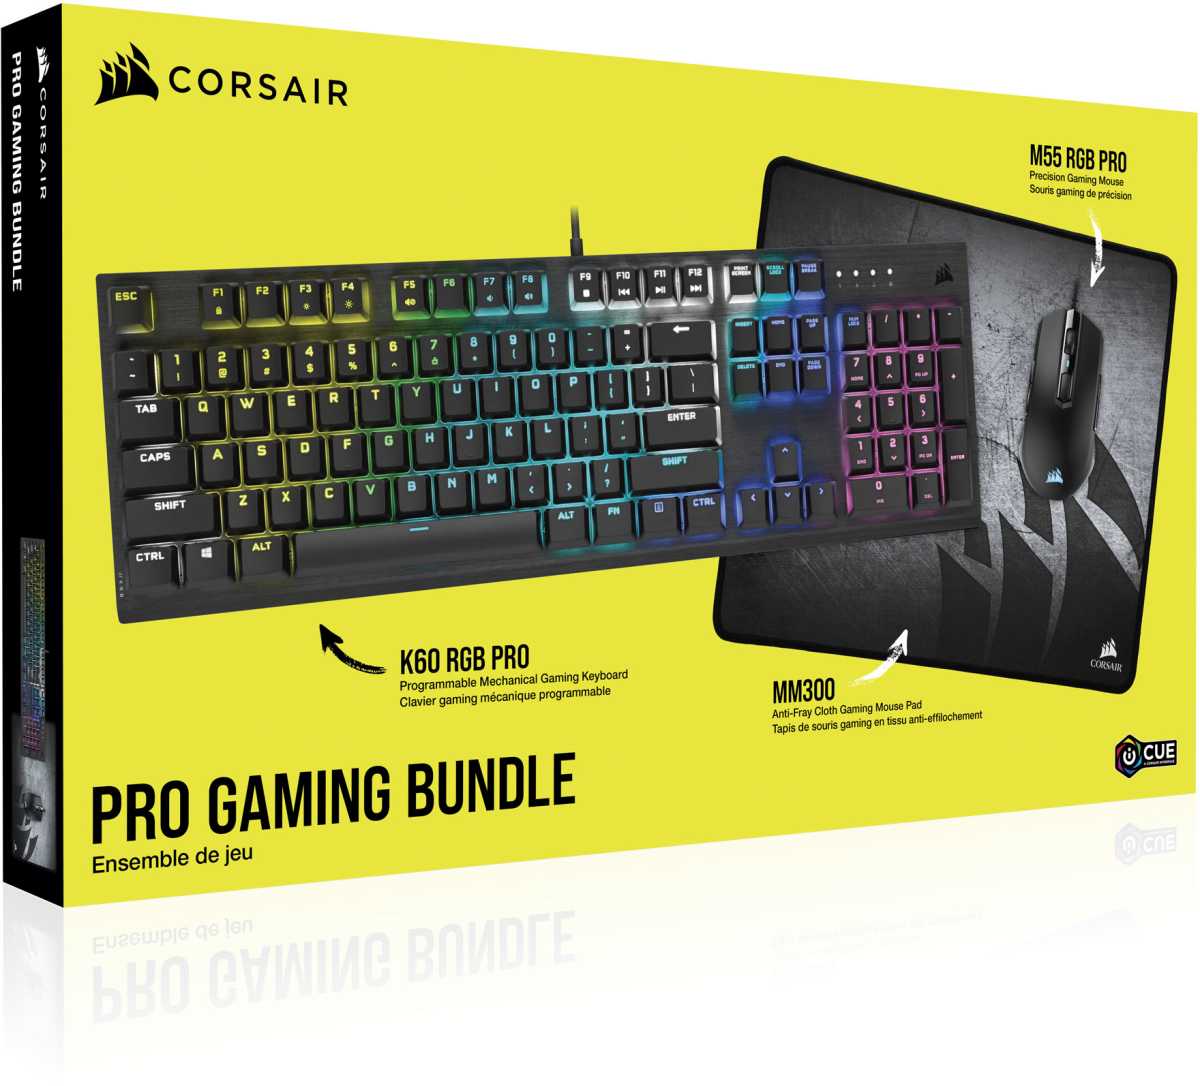 Corsair Pro Gaming Bundle